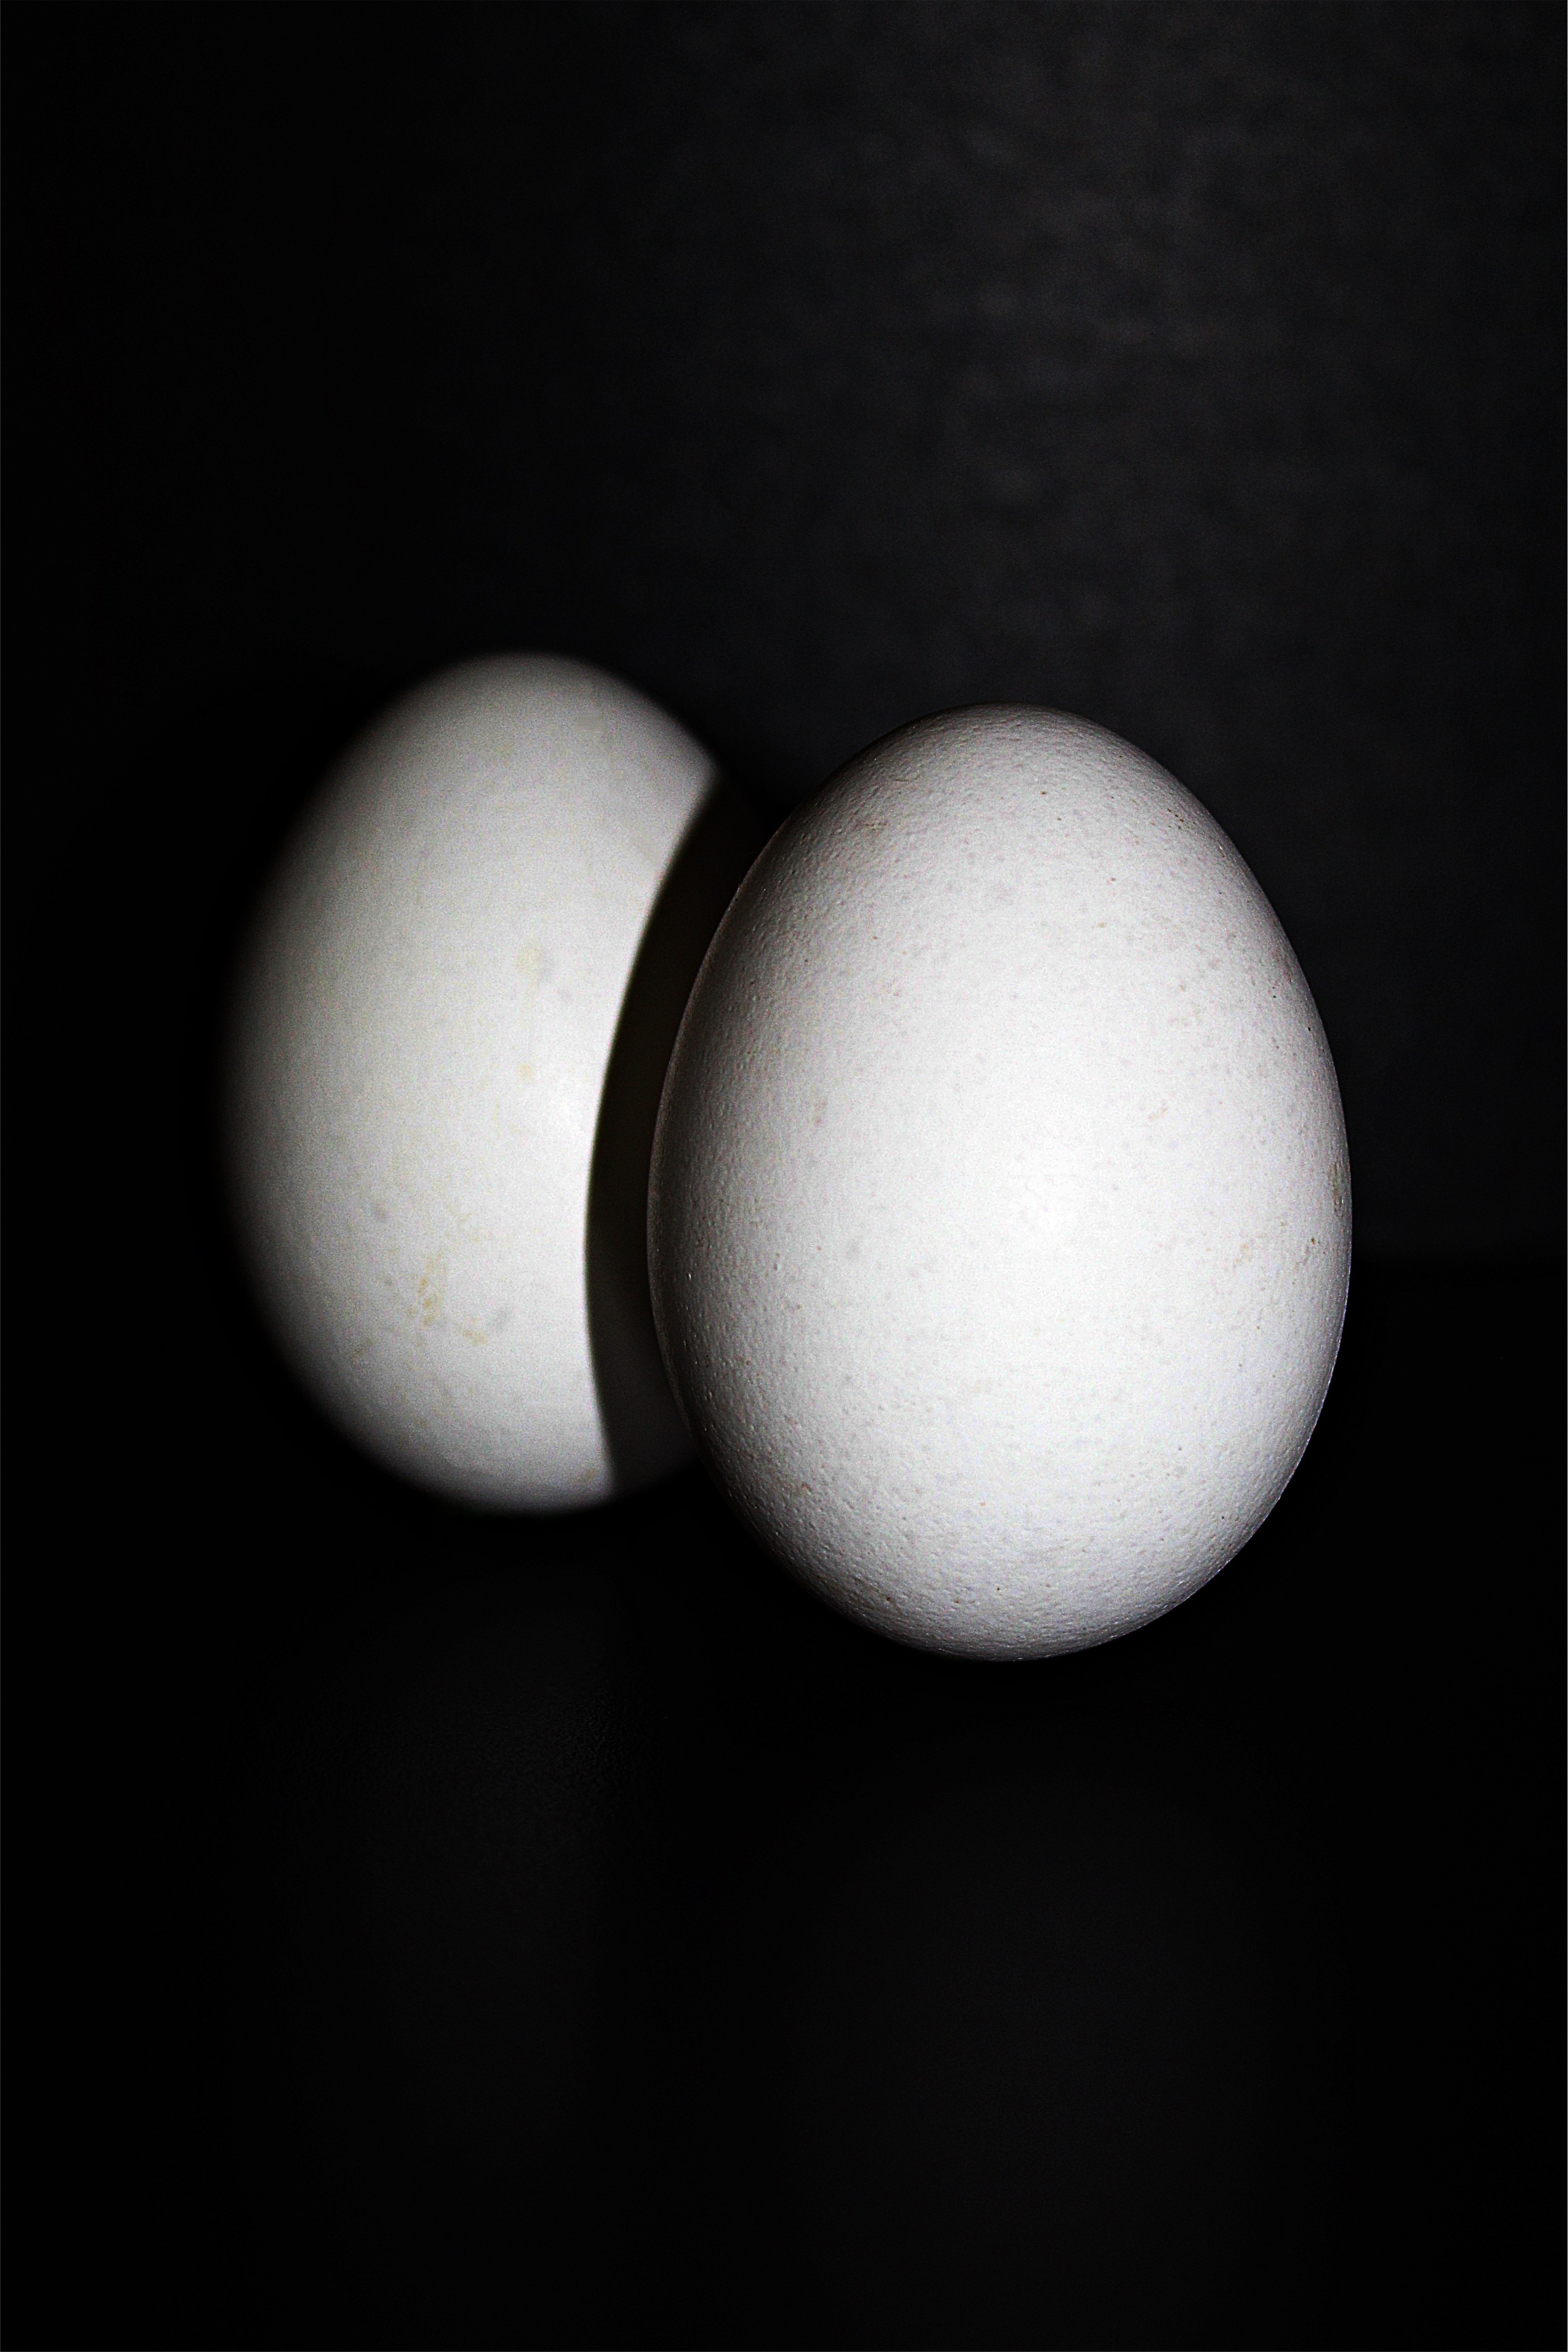 2 white chicken eggs